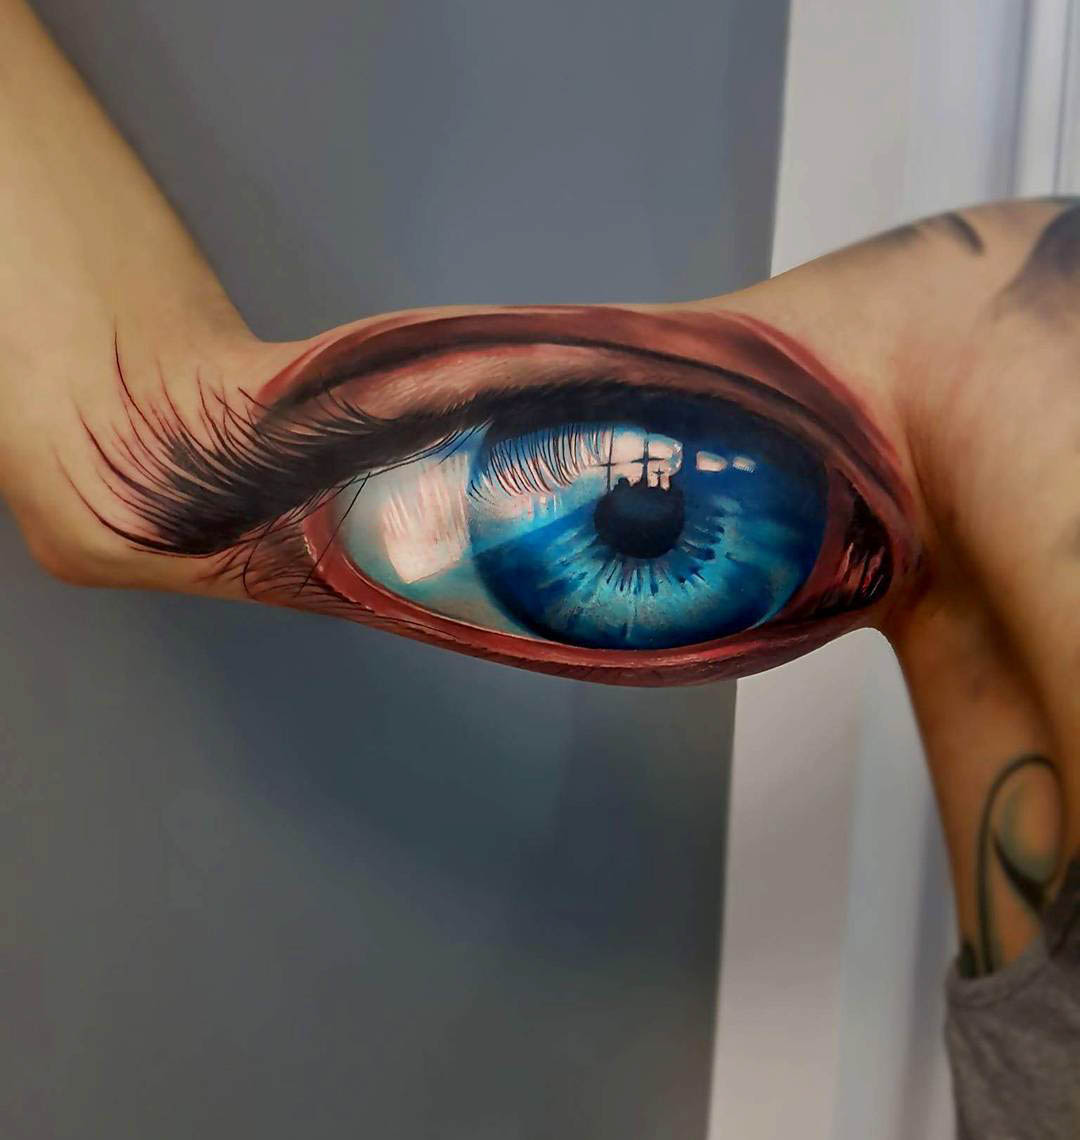 Big Blue Eye Tattoo | Best Tattoo Ideas Gallery